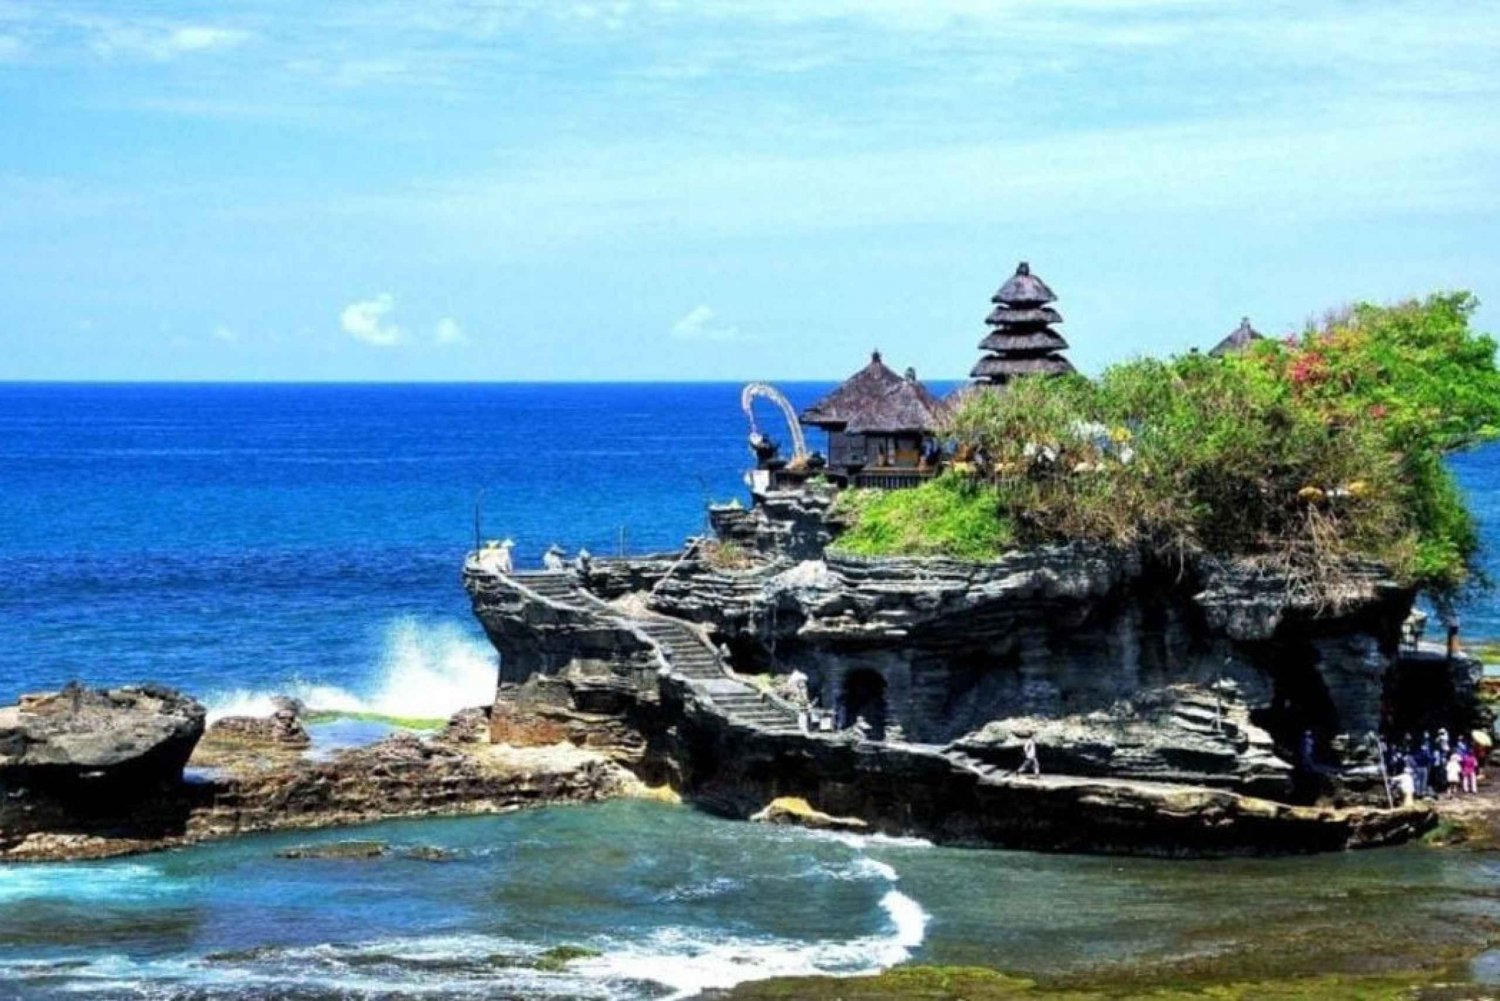 Bali : Tanah Lot-templet, Padang-padang-stranden, Kecak-dans